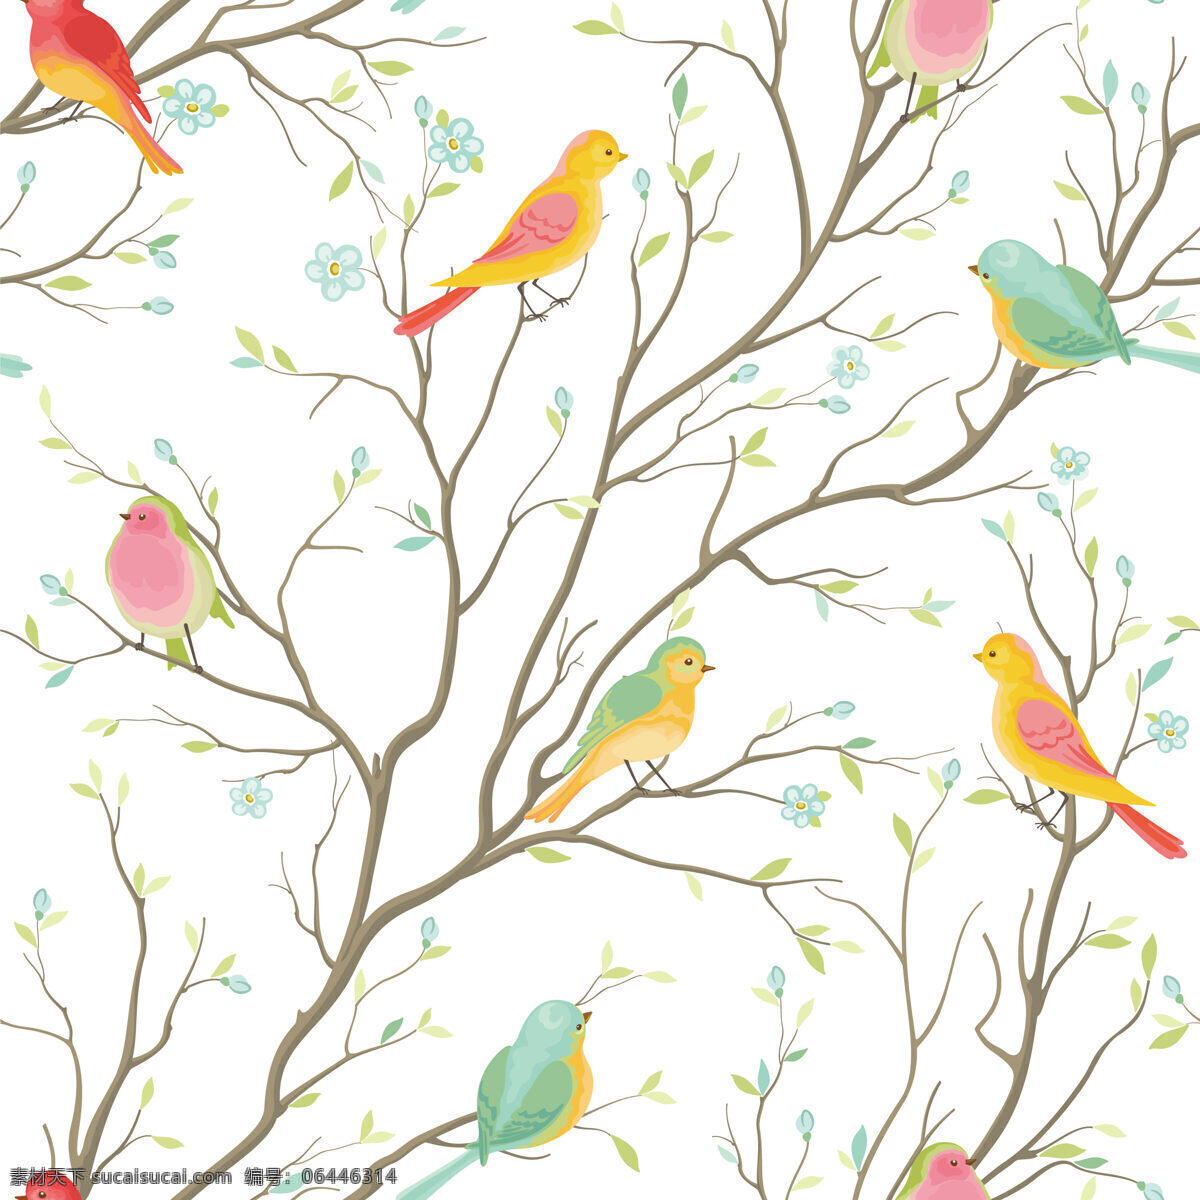 清新 素雅 鸟类 壁纸 图案 装饰设计 壁纸图案 颜色小鸟 浅褐色树枝 绿色树叶